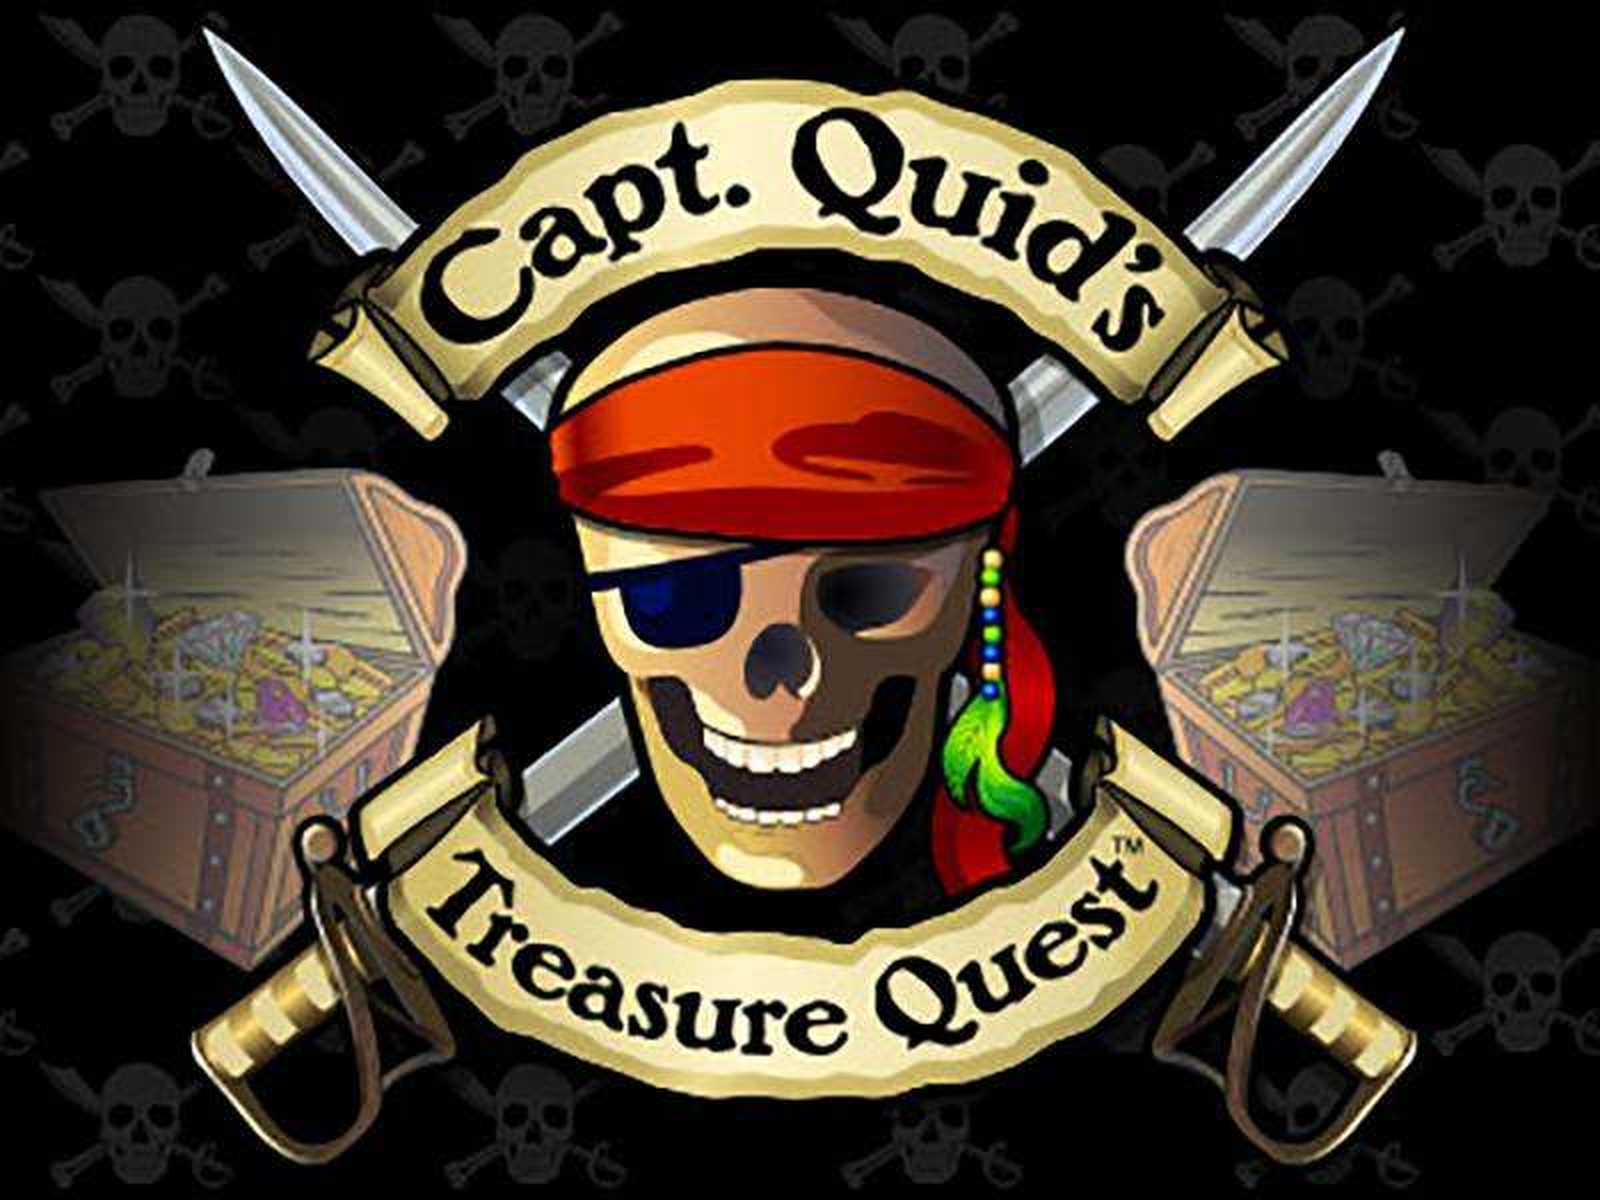 Captain Quids Treasure Quest demo